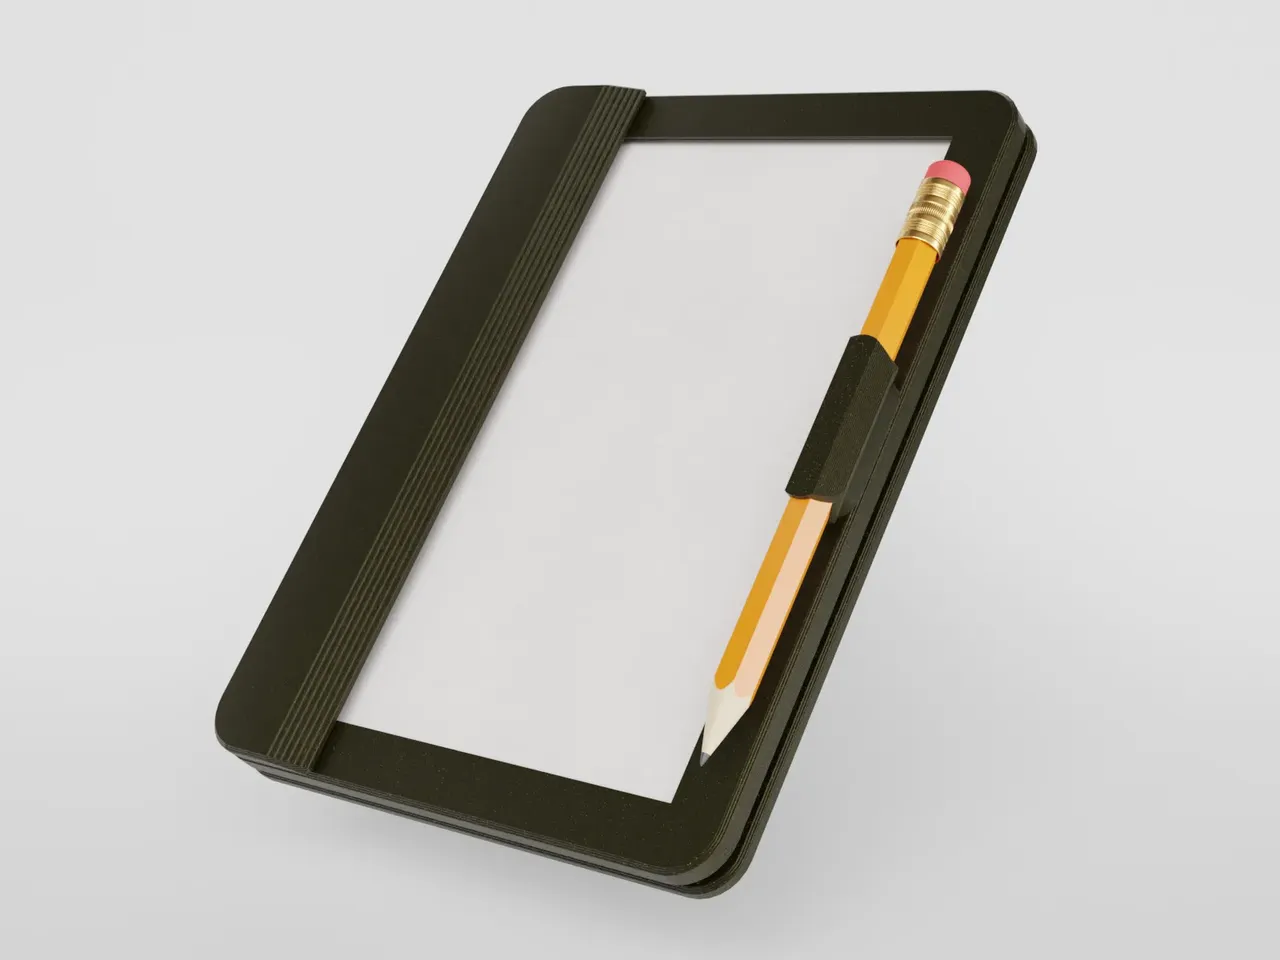 Analog Tablet (Sketching Pad) by daandruff, Download free STL model